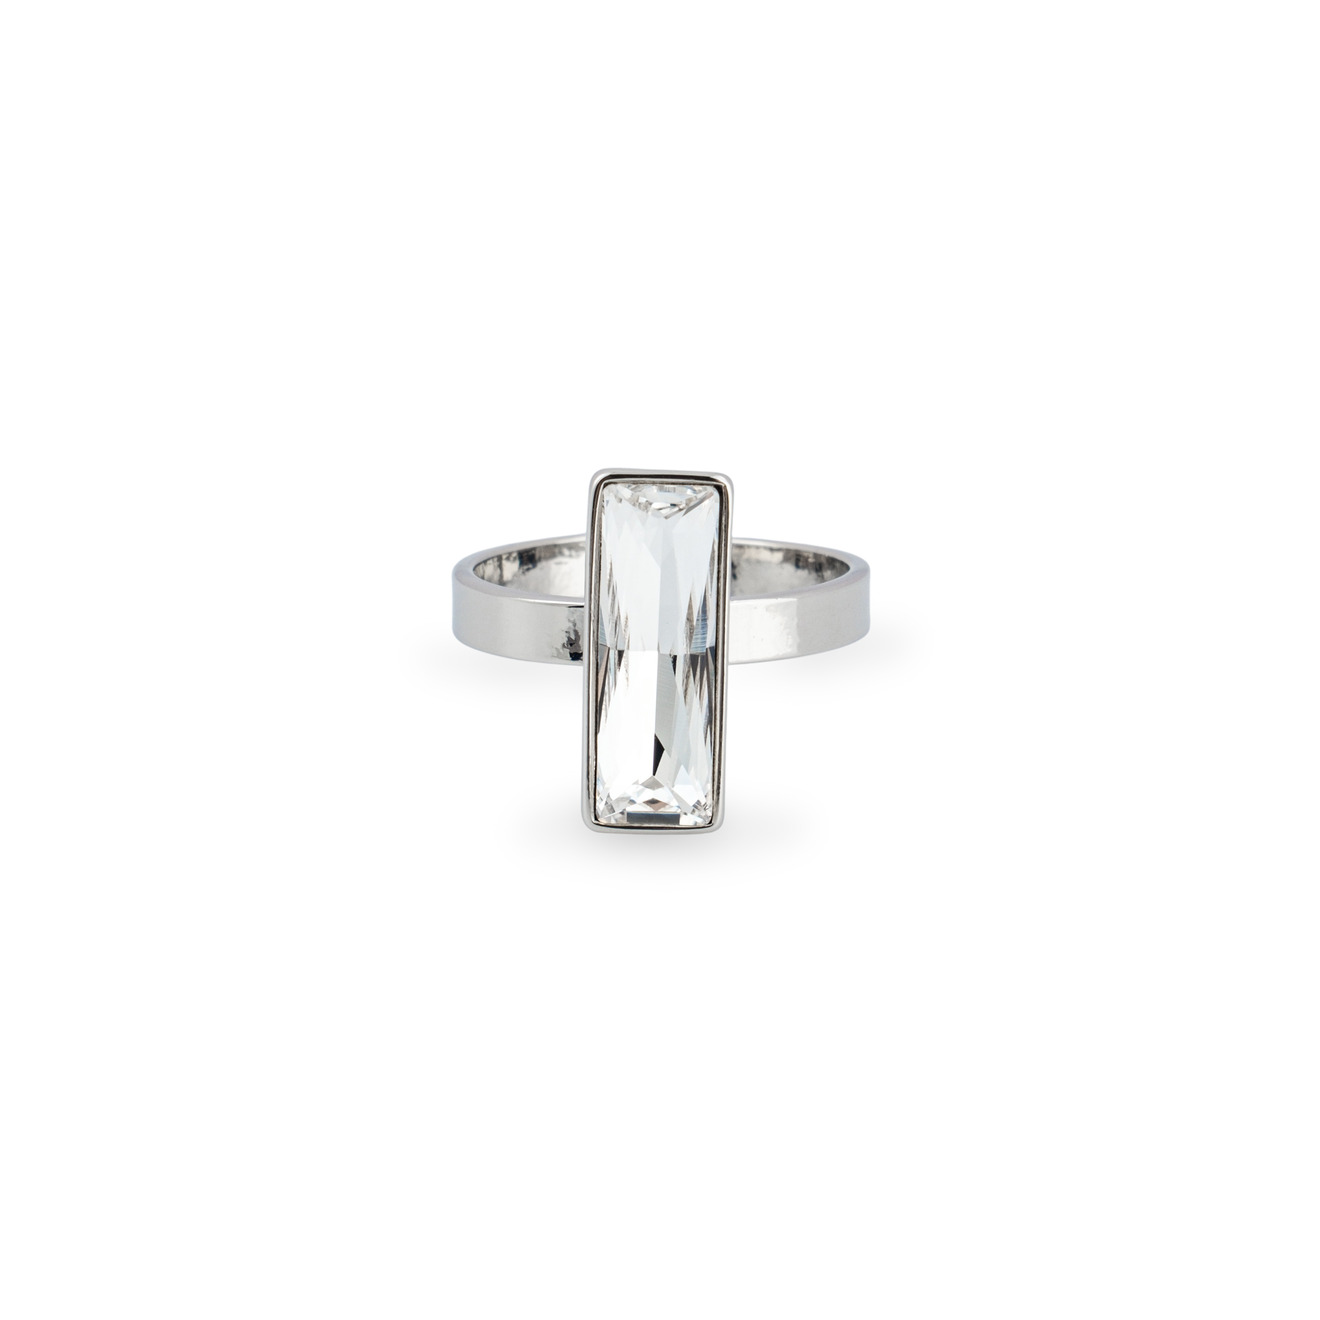 Herald Percy Серебристое кольцо с прозрачным кристаллом herald percy золотистая цепочка с подвеской прямоугольником с кристаллом